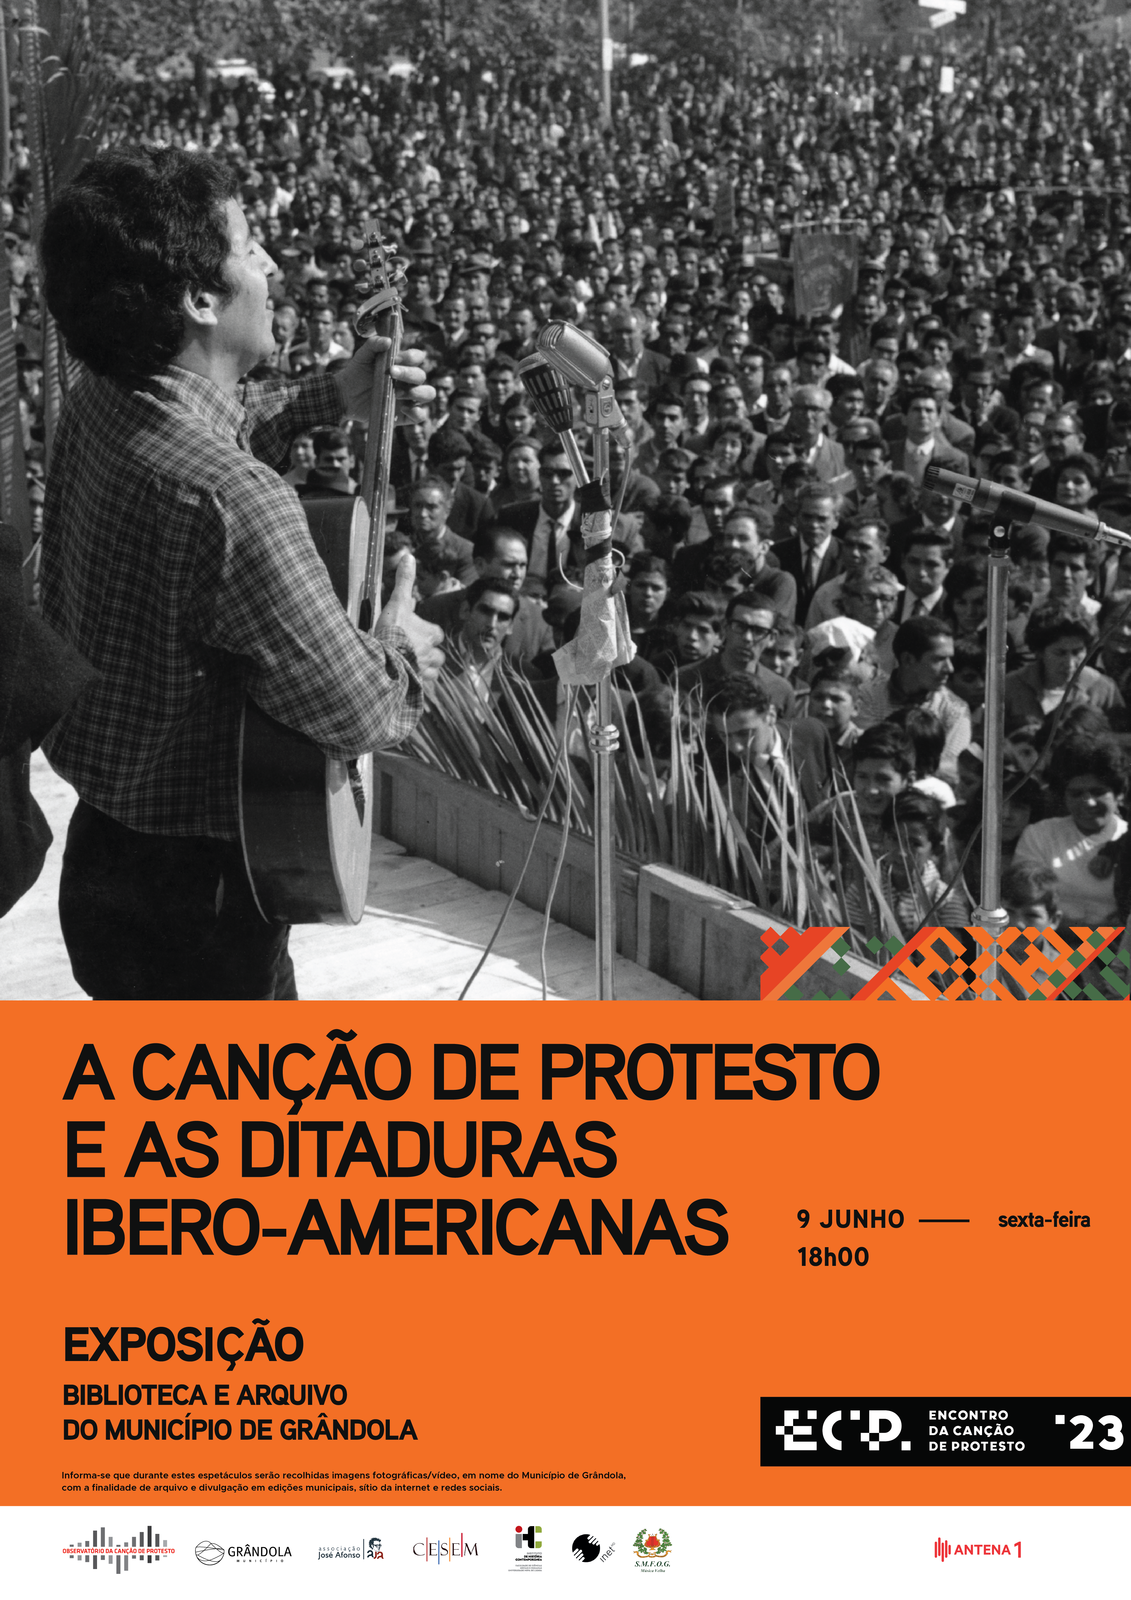 Encontro da Canção de Protesto | Exposição «A Canção de Protesto e as Ditaduras Ibero-Americanas»